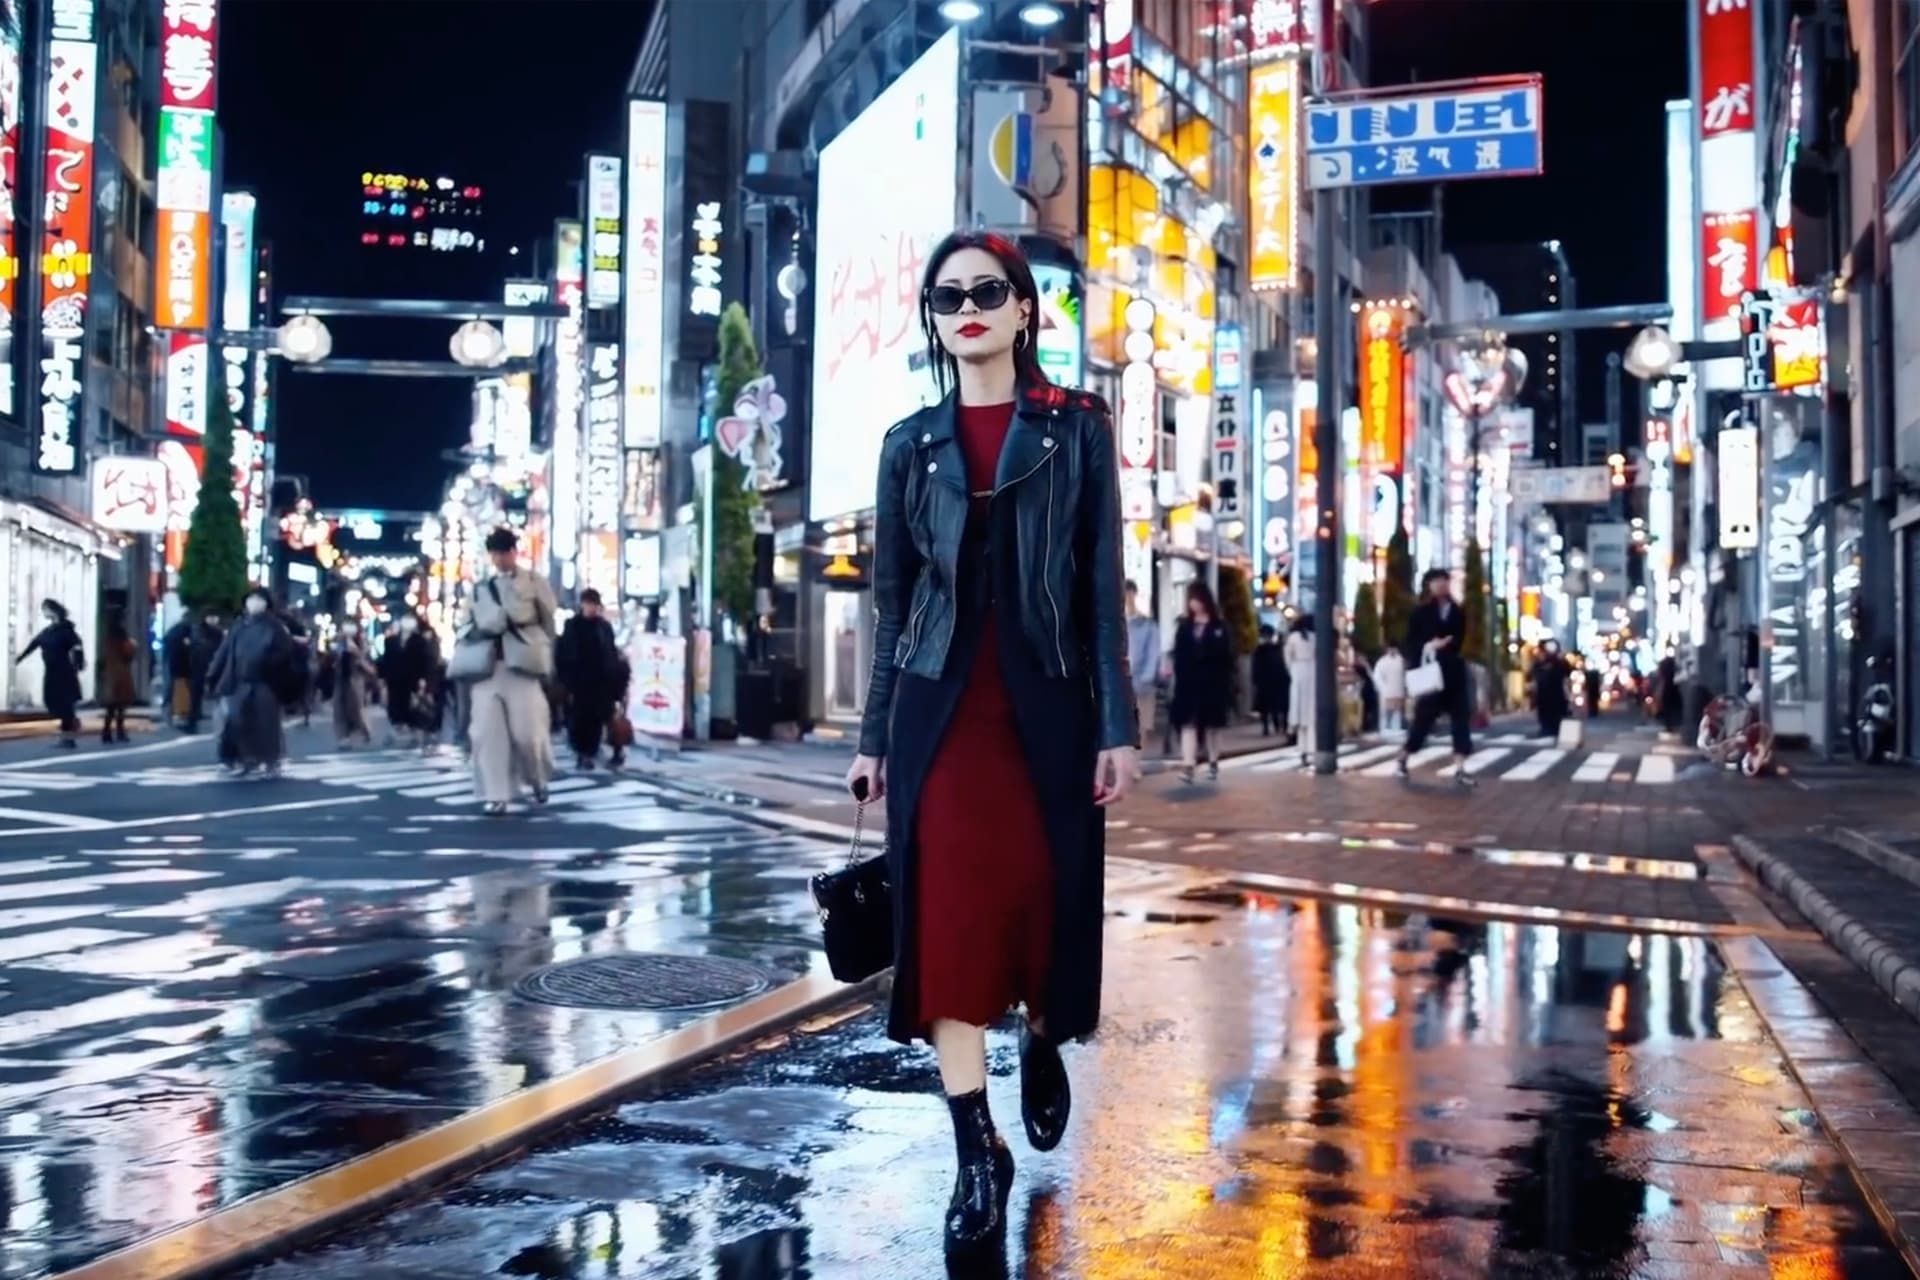 یک زن در حال قدم زدن در توکیو نمونه Sora